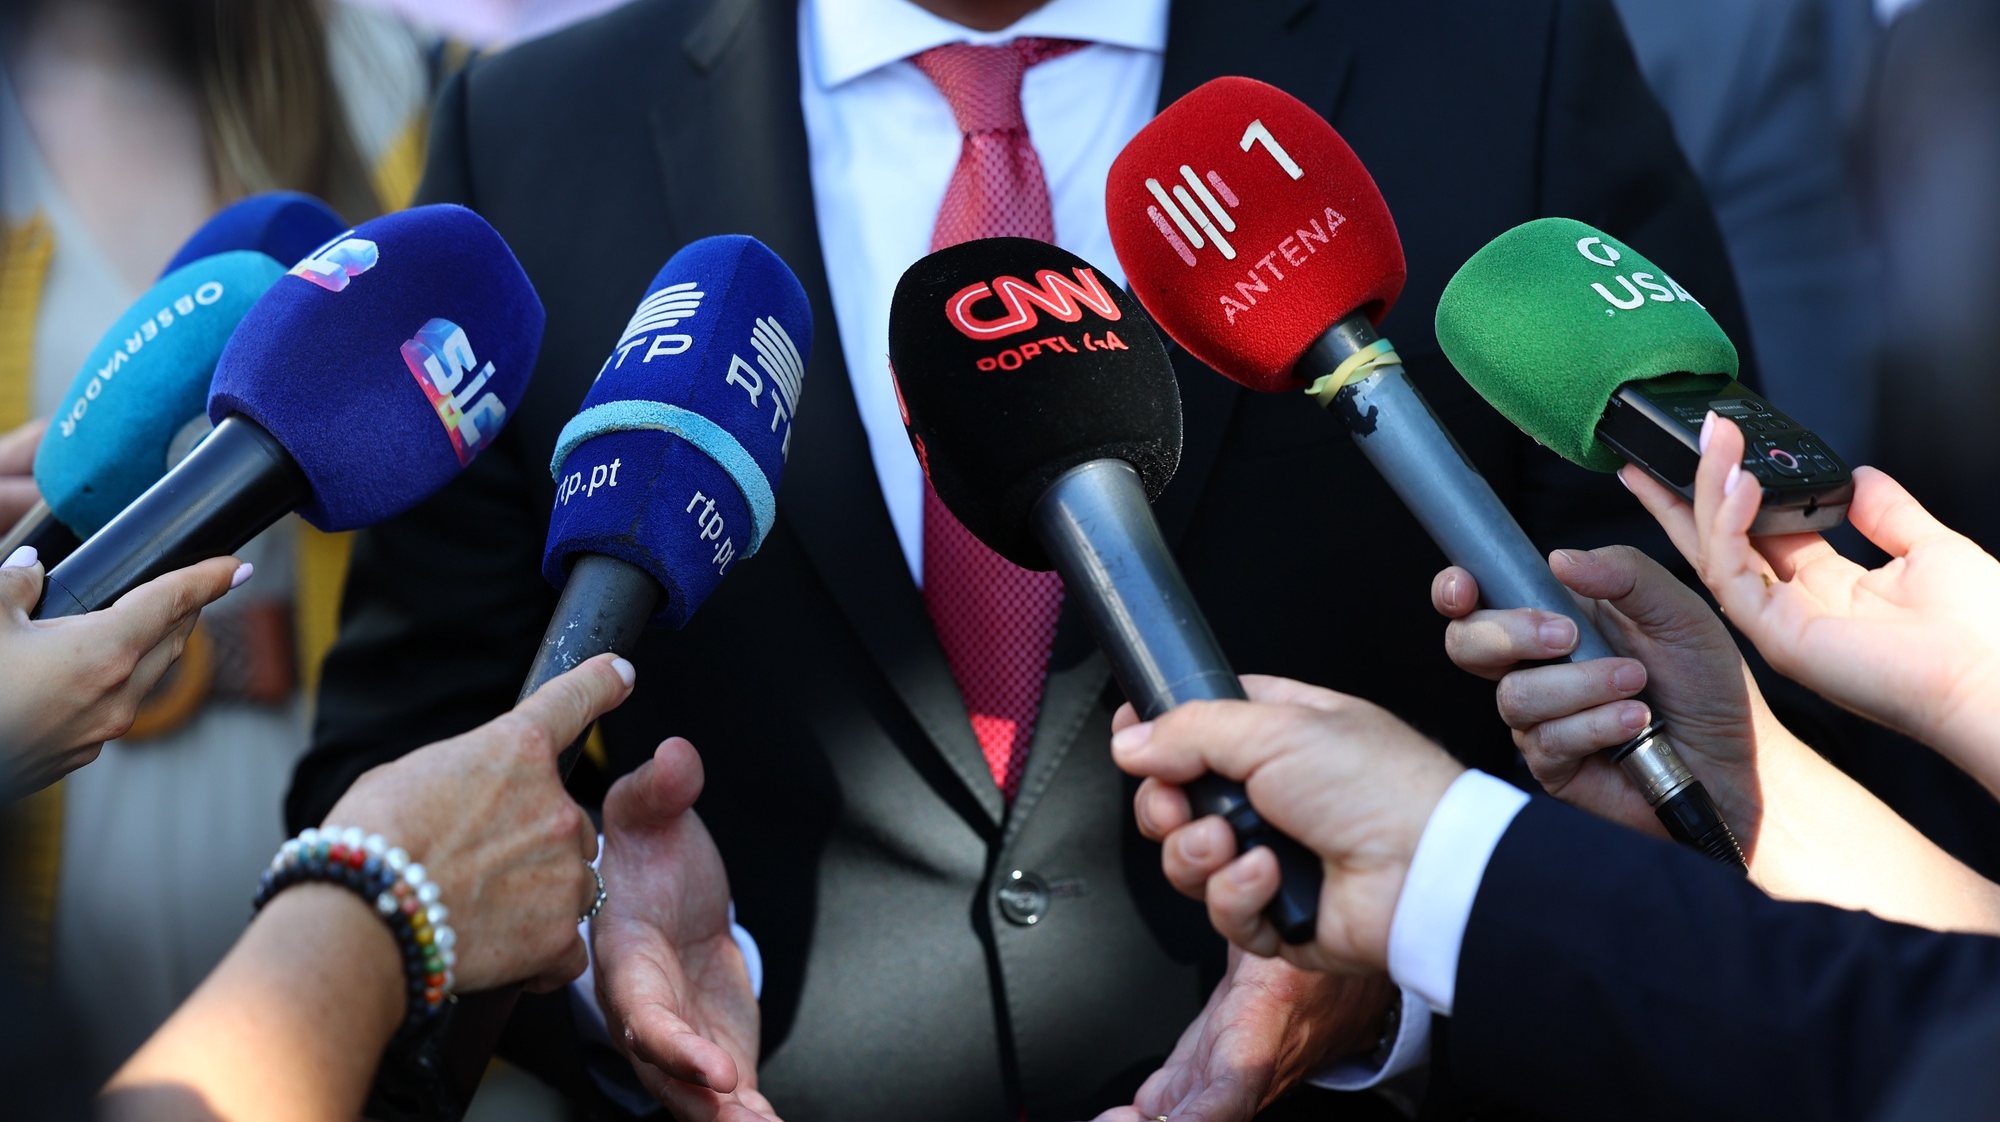 Microfones de jornalistas de vários orgãos de comunicação social portugueses. Évora, 18 de abril de 2023. NUNO VEIGA/LUSA